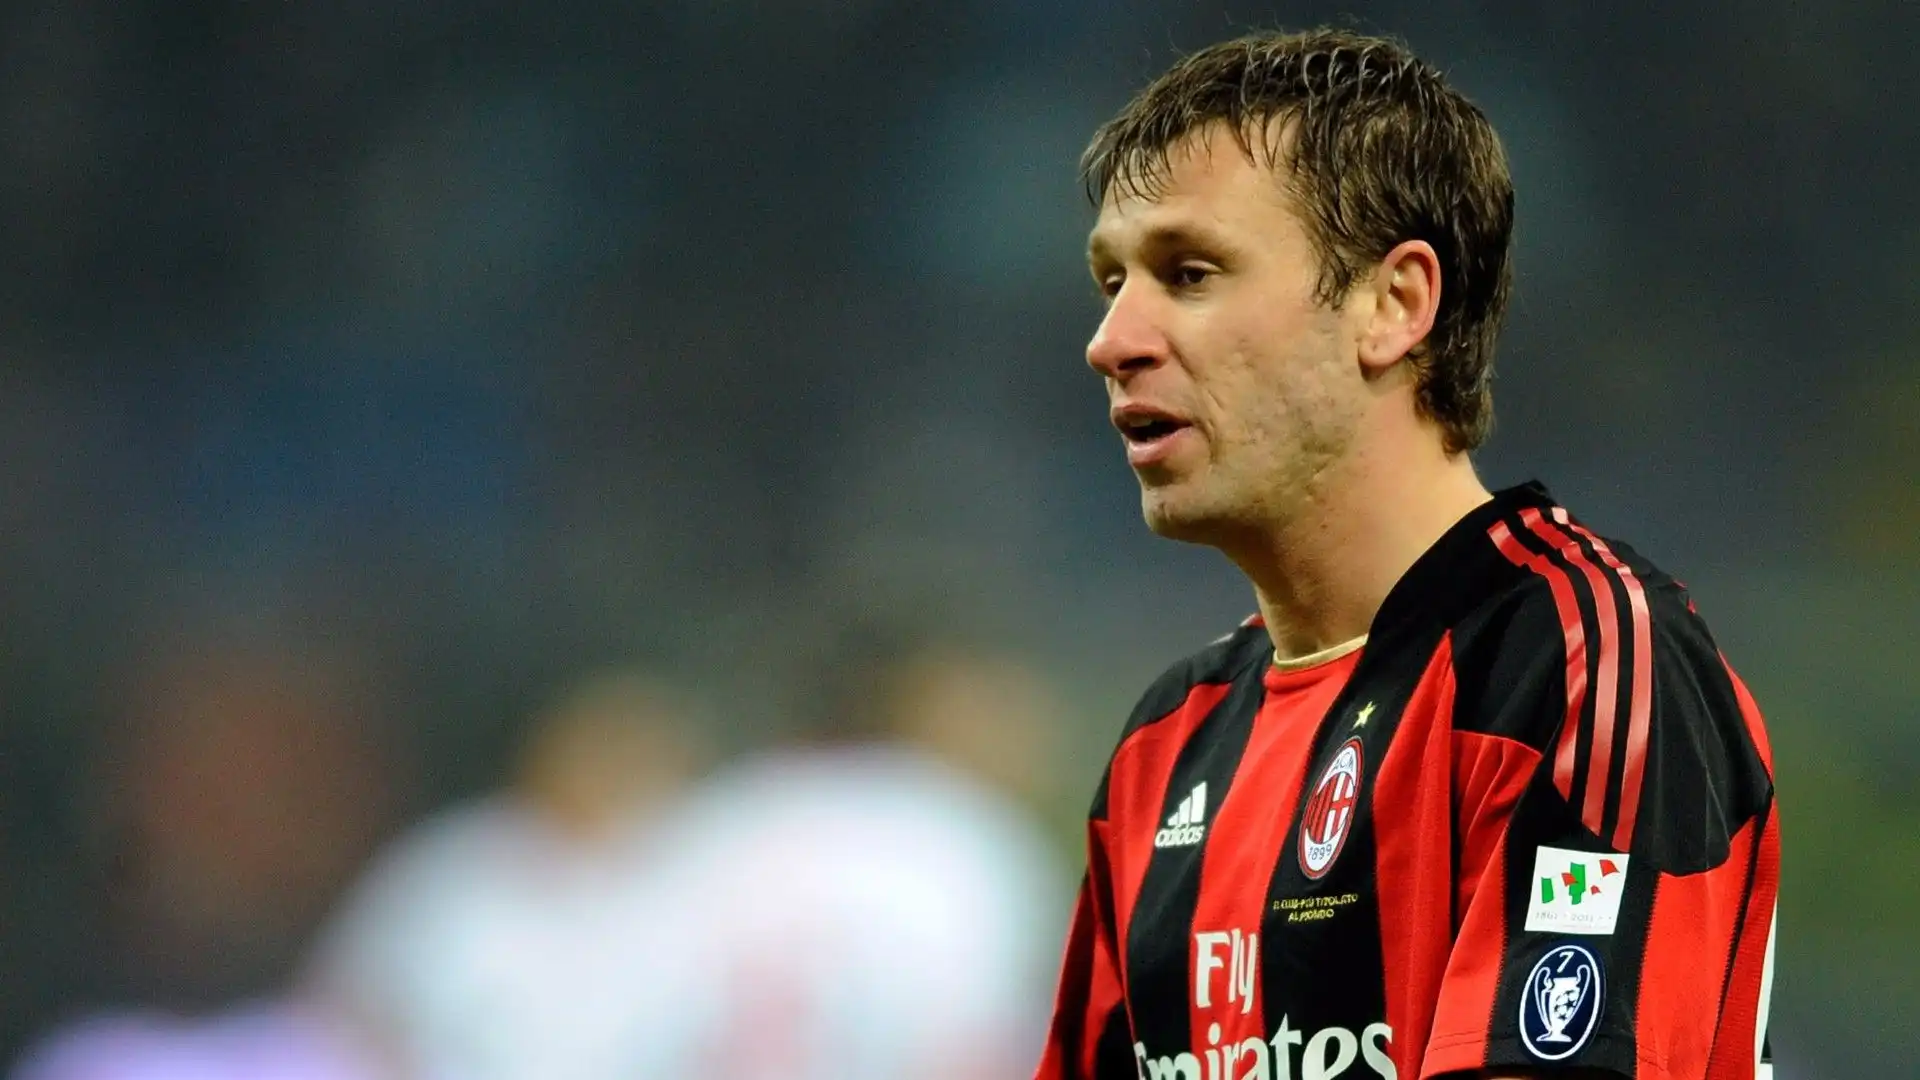 Il Milan ha acquistato Cassano dalla Sampdoria nel 2011 e l'ha venduto all'Inter l'anno successivo